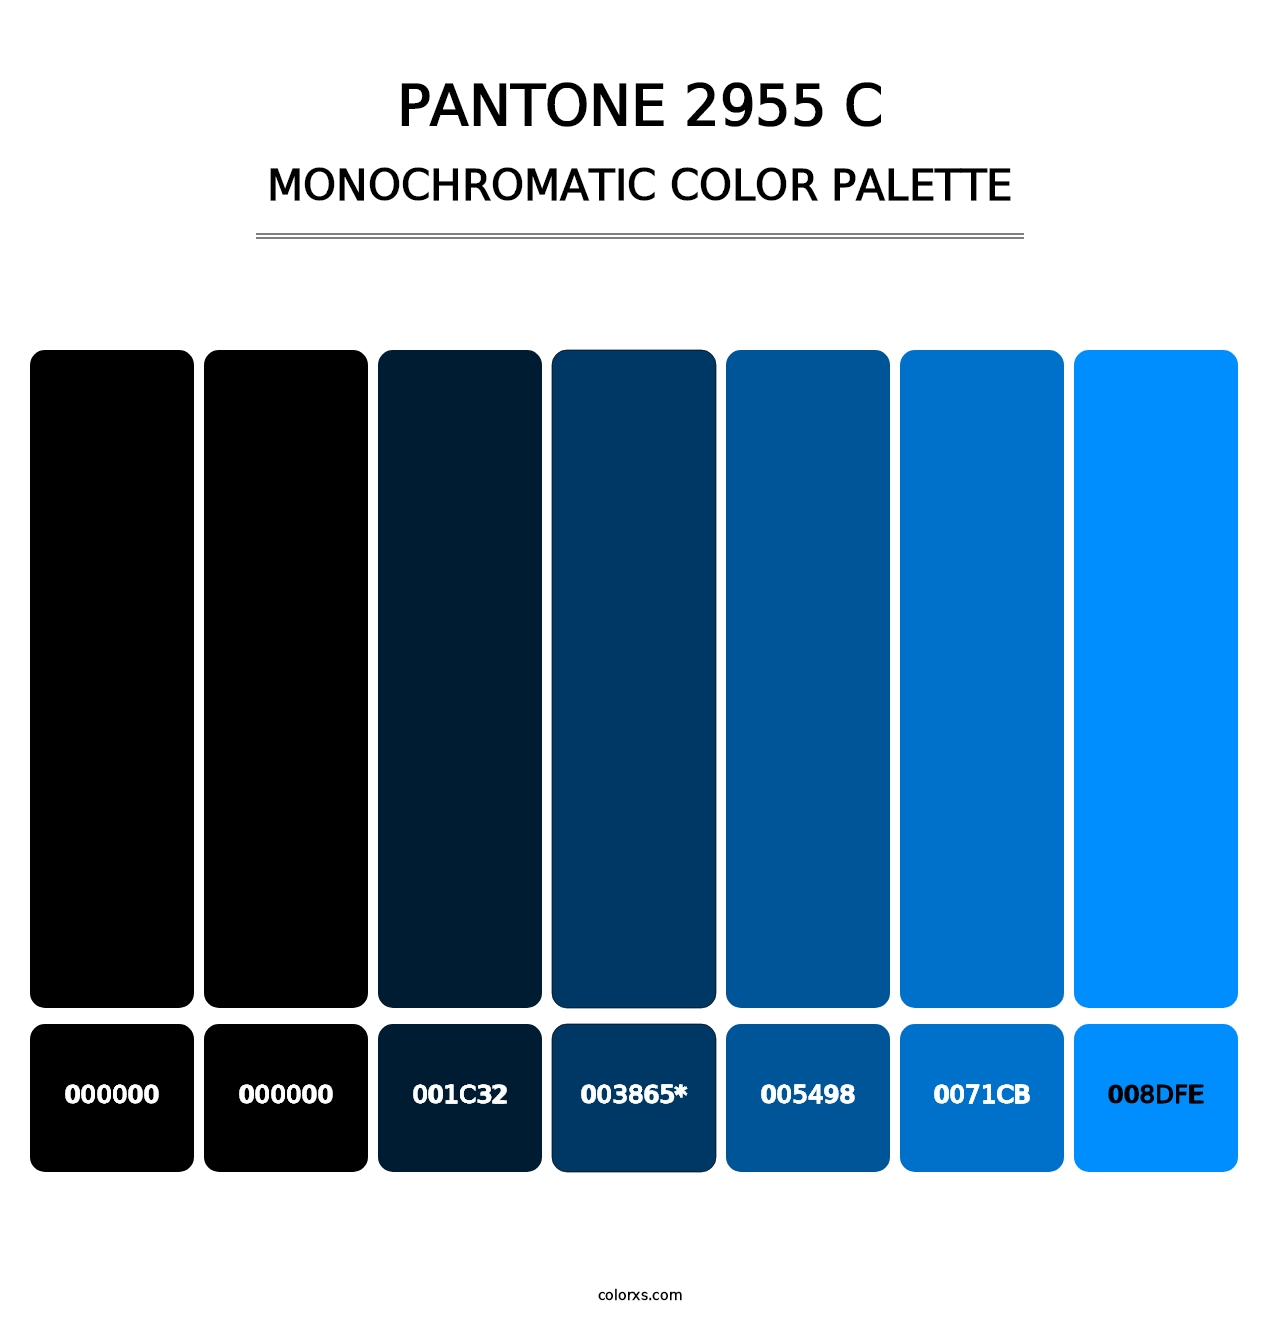 PANTONE 2955 C - Monochromatic Color Palette